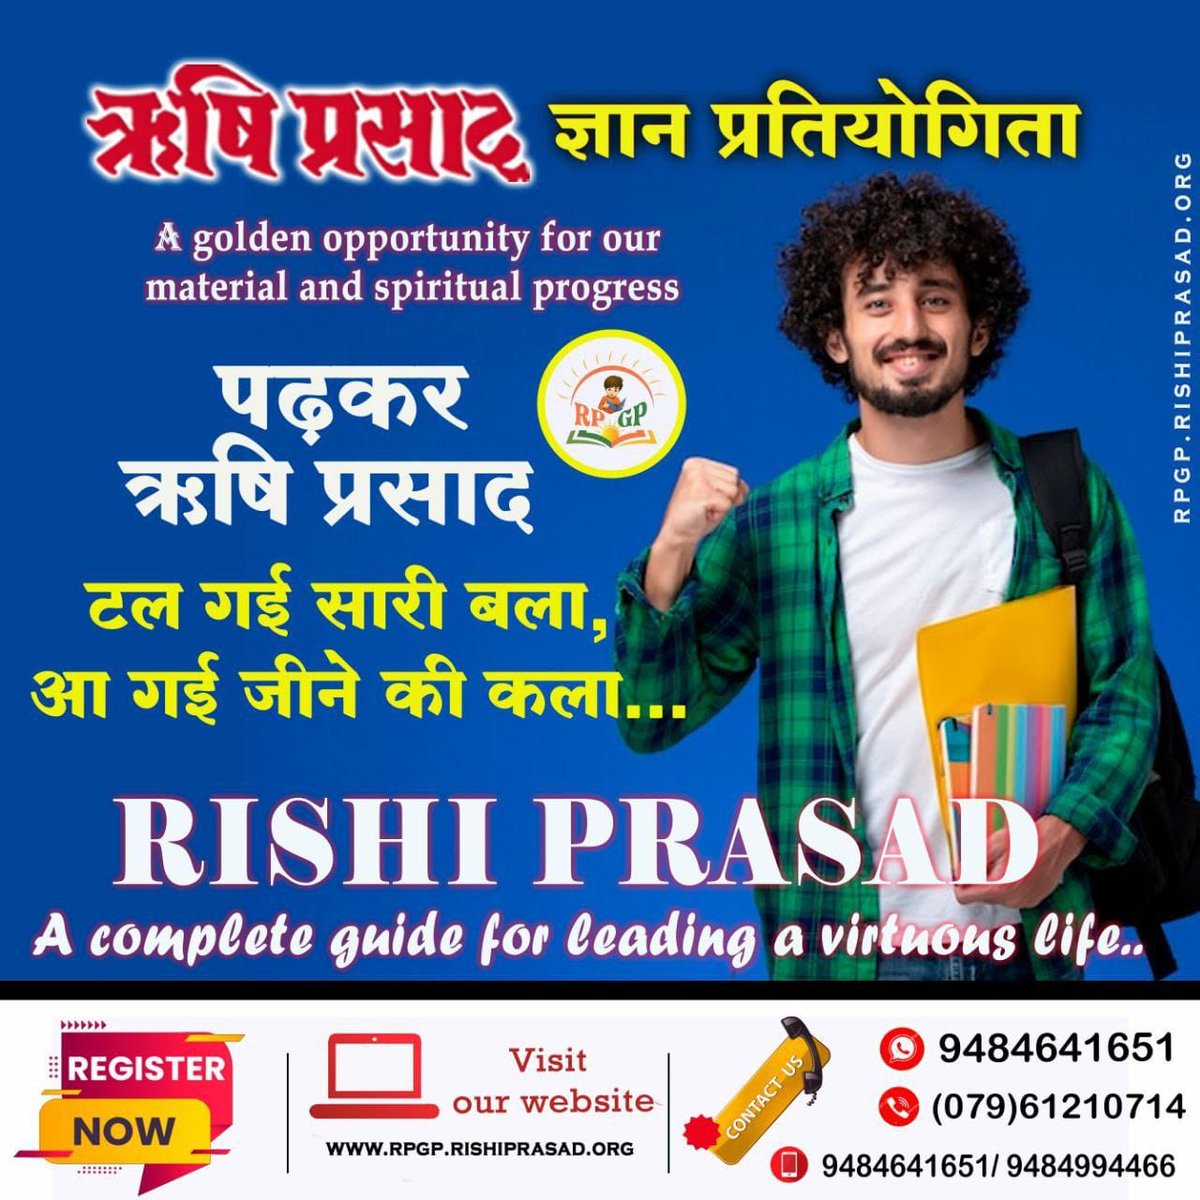 #ऋषियों_का_ज्ञान Sant Shri Asharamji Ashram द्वारा Rishi Prasad Gyan Pratiyogita होने जा रही है 10वीं बार 14 अप्रैल को ❗अवश्य भाग ले। Quiz For Knowledge